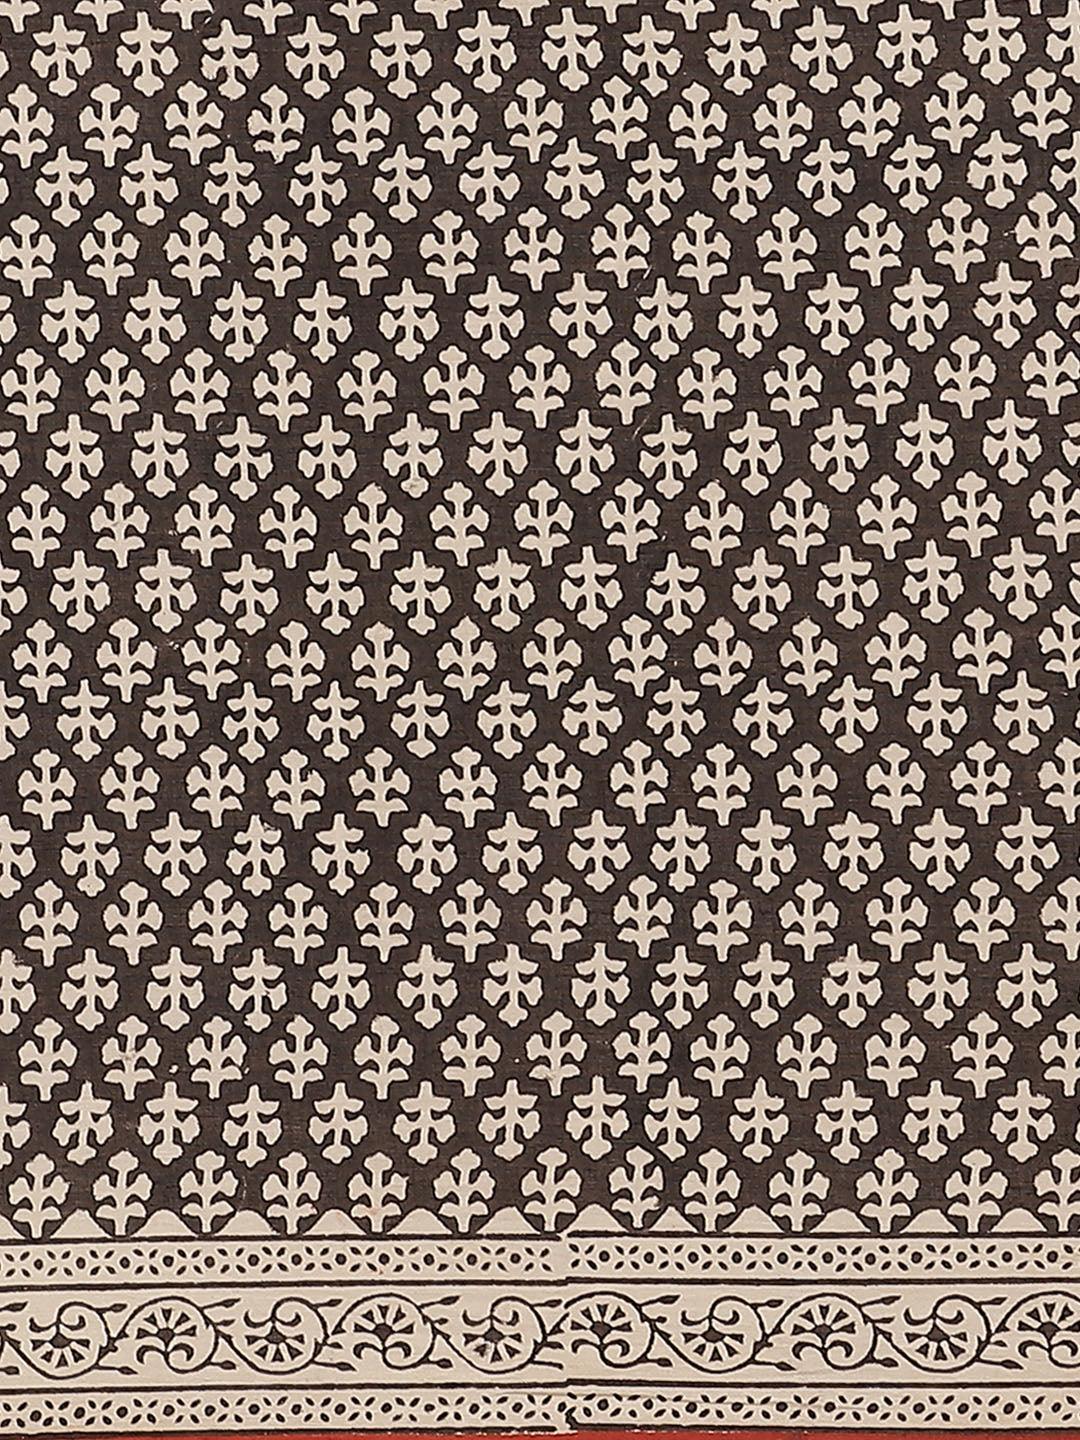 Black Printed Cotton Saree - ShopLibas